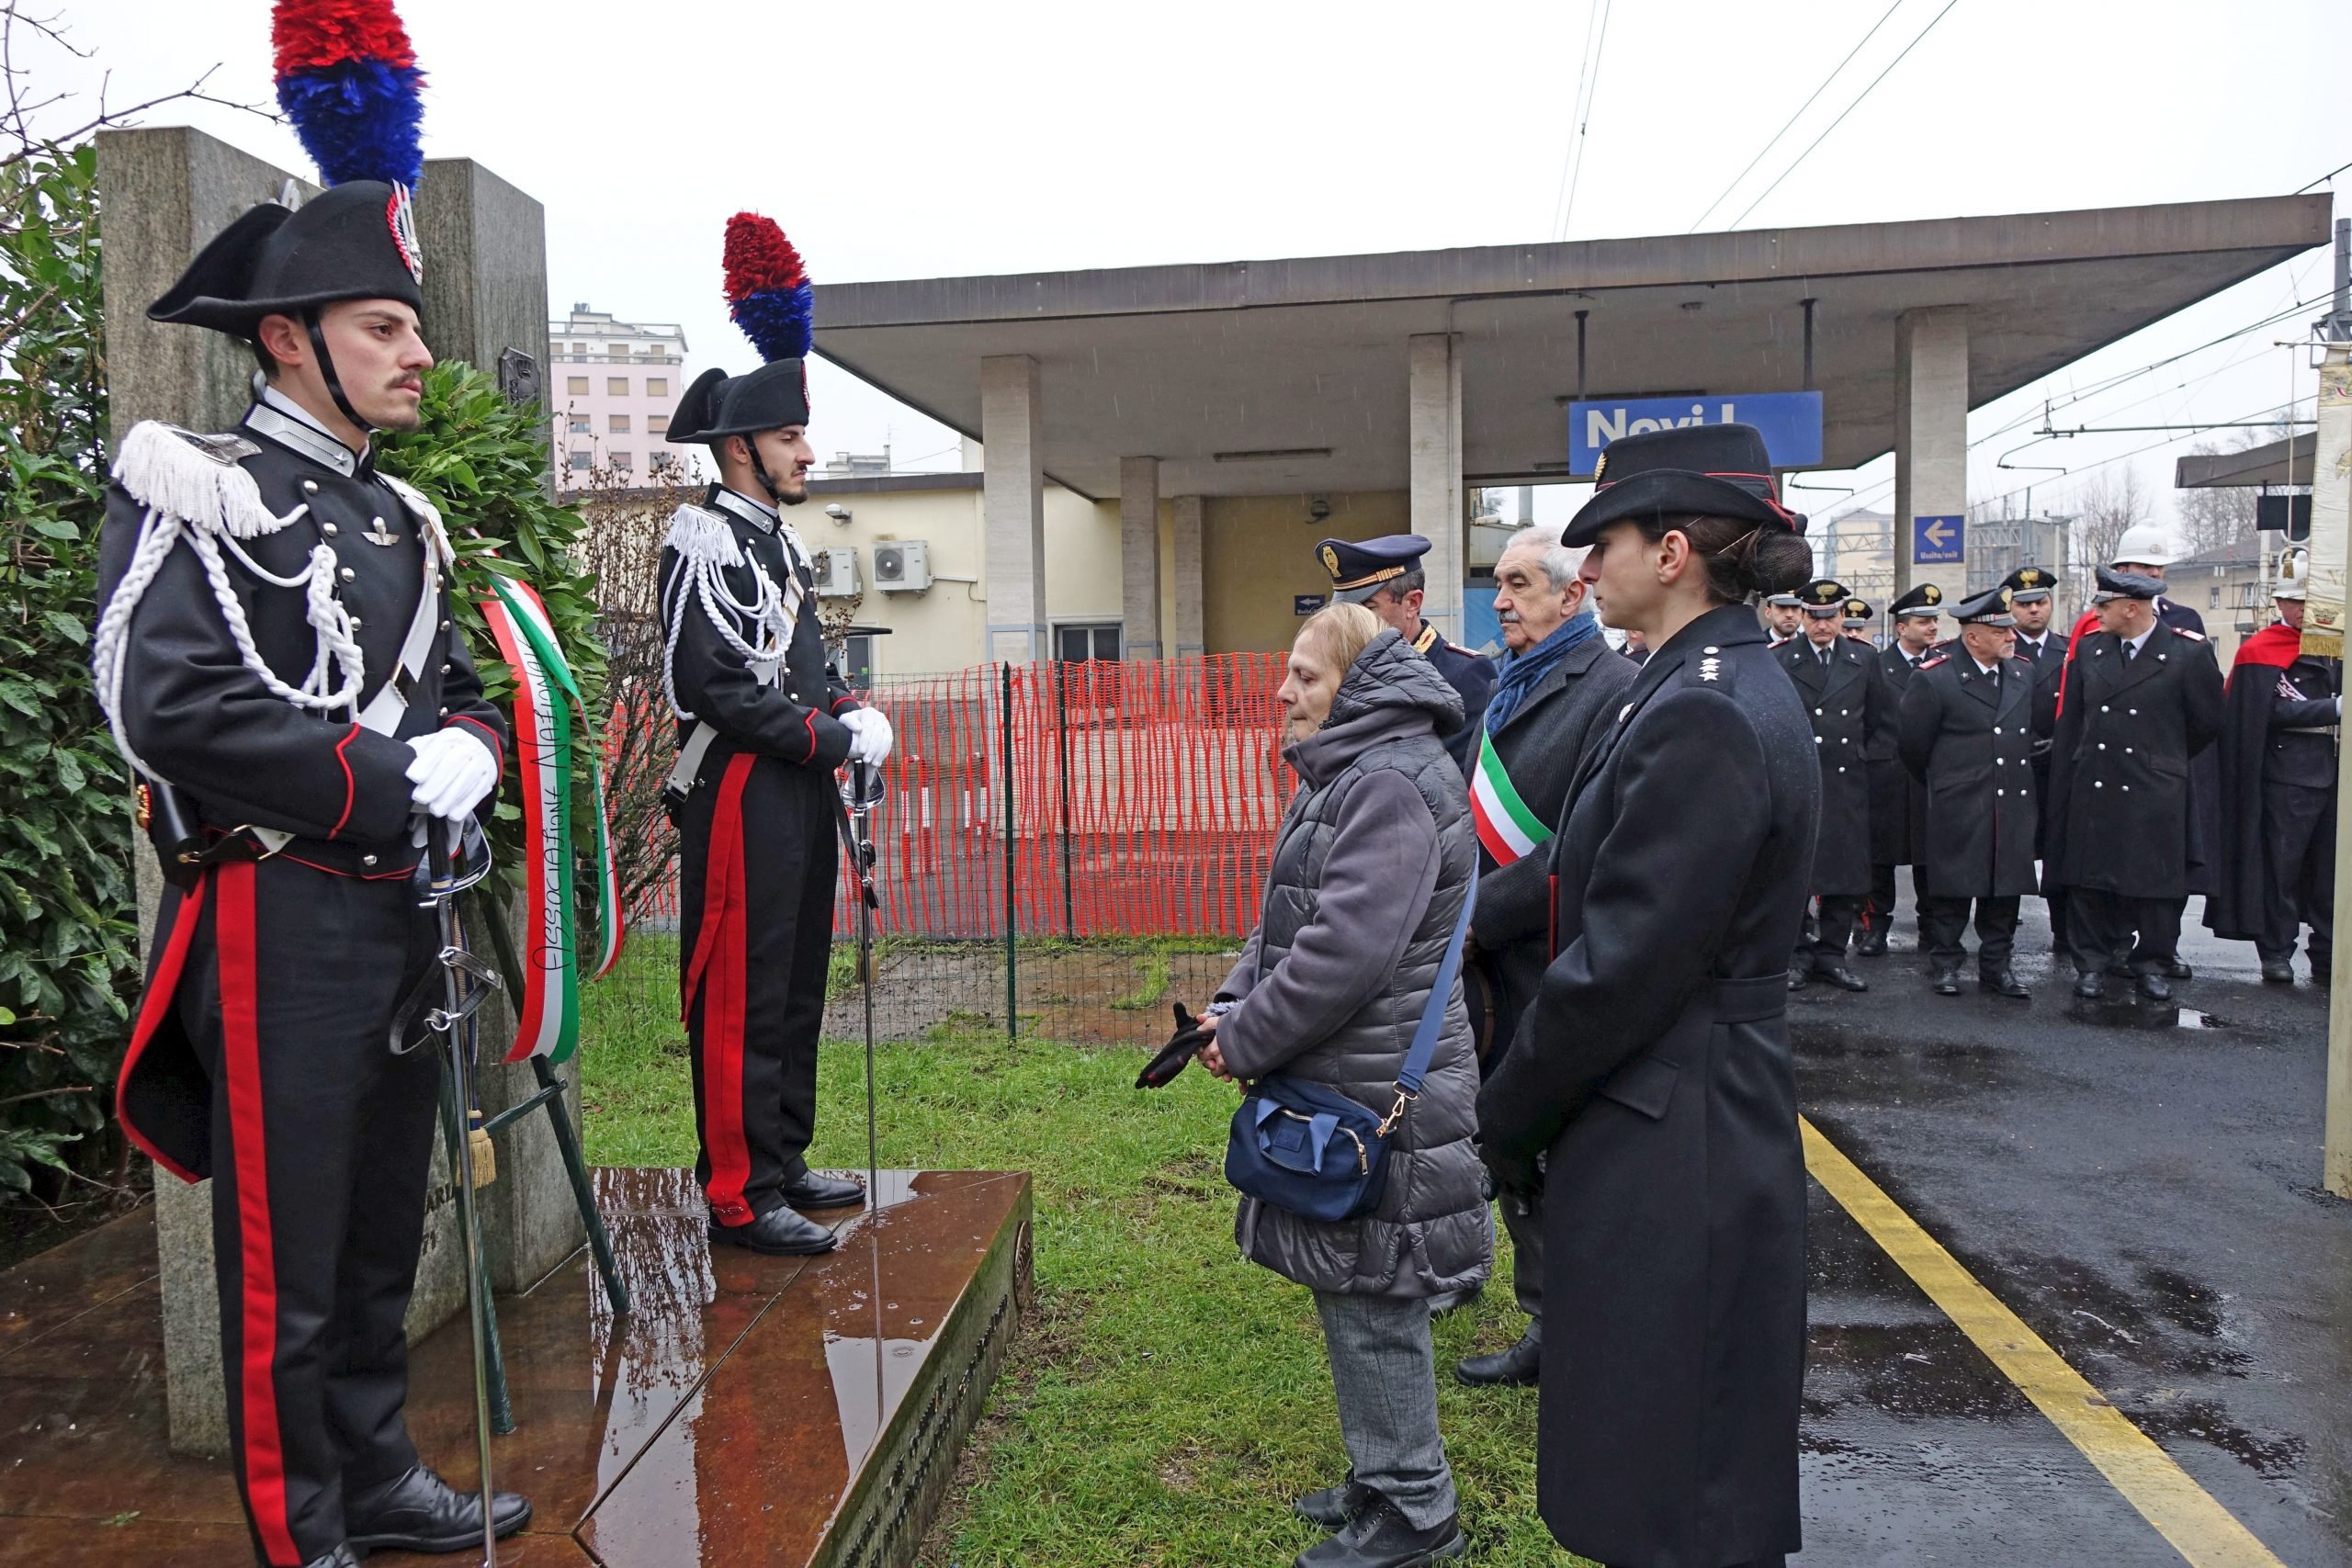 Novi ricorda i tre Carabinieri uccisi nella rivolta in treno del 1971